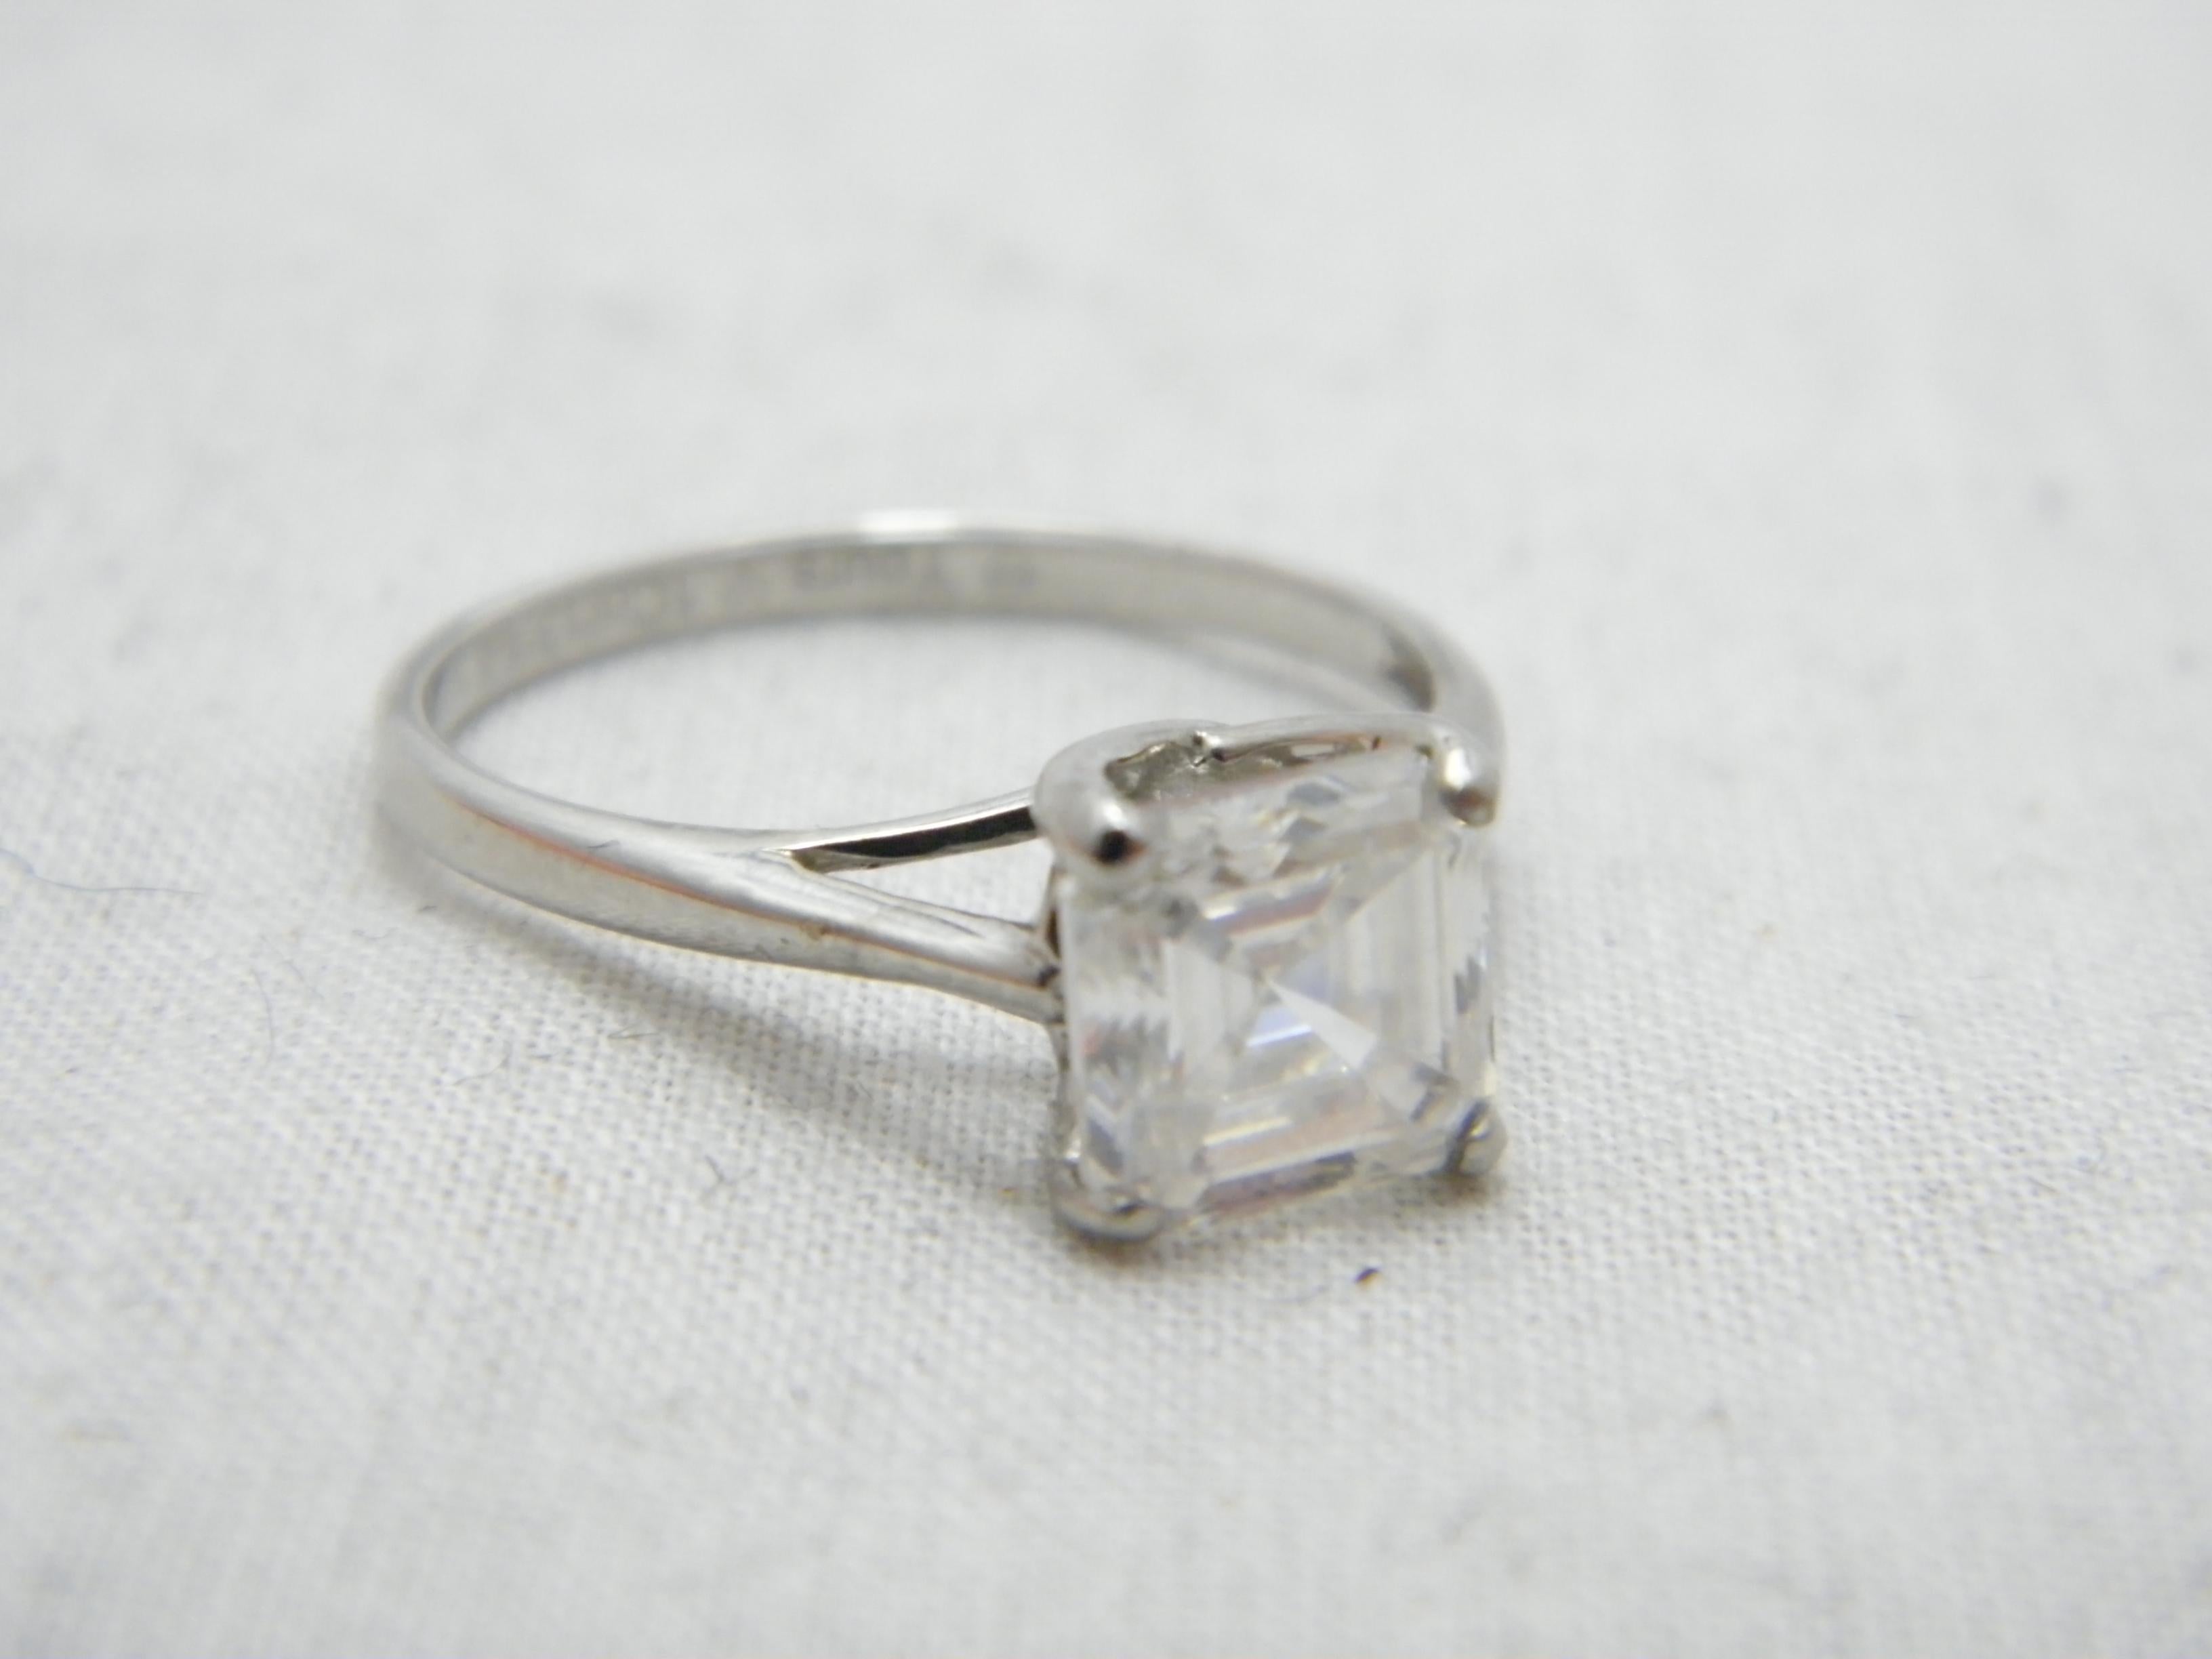 Princess Cut Vintage 14ct White Gold 2.75 Cttw Diamond Solitaire Engagement Ring Size Q 8.25 For Sale